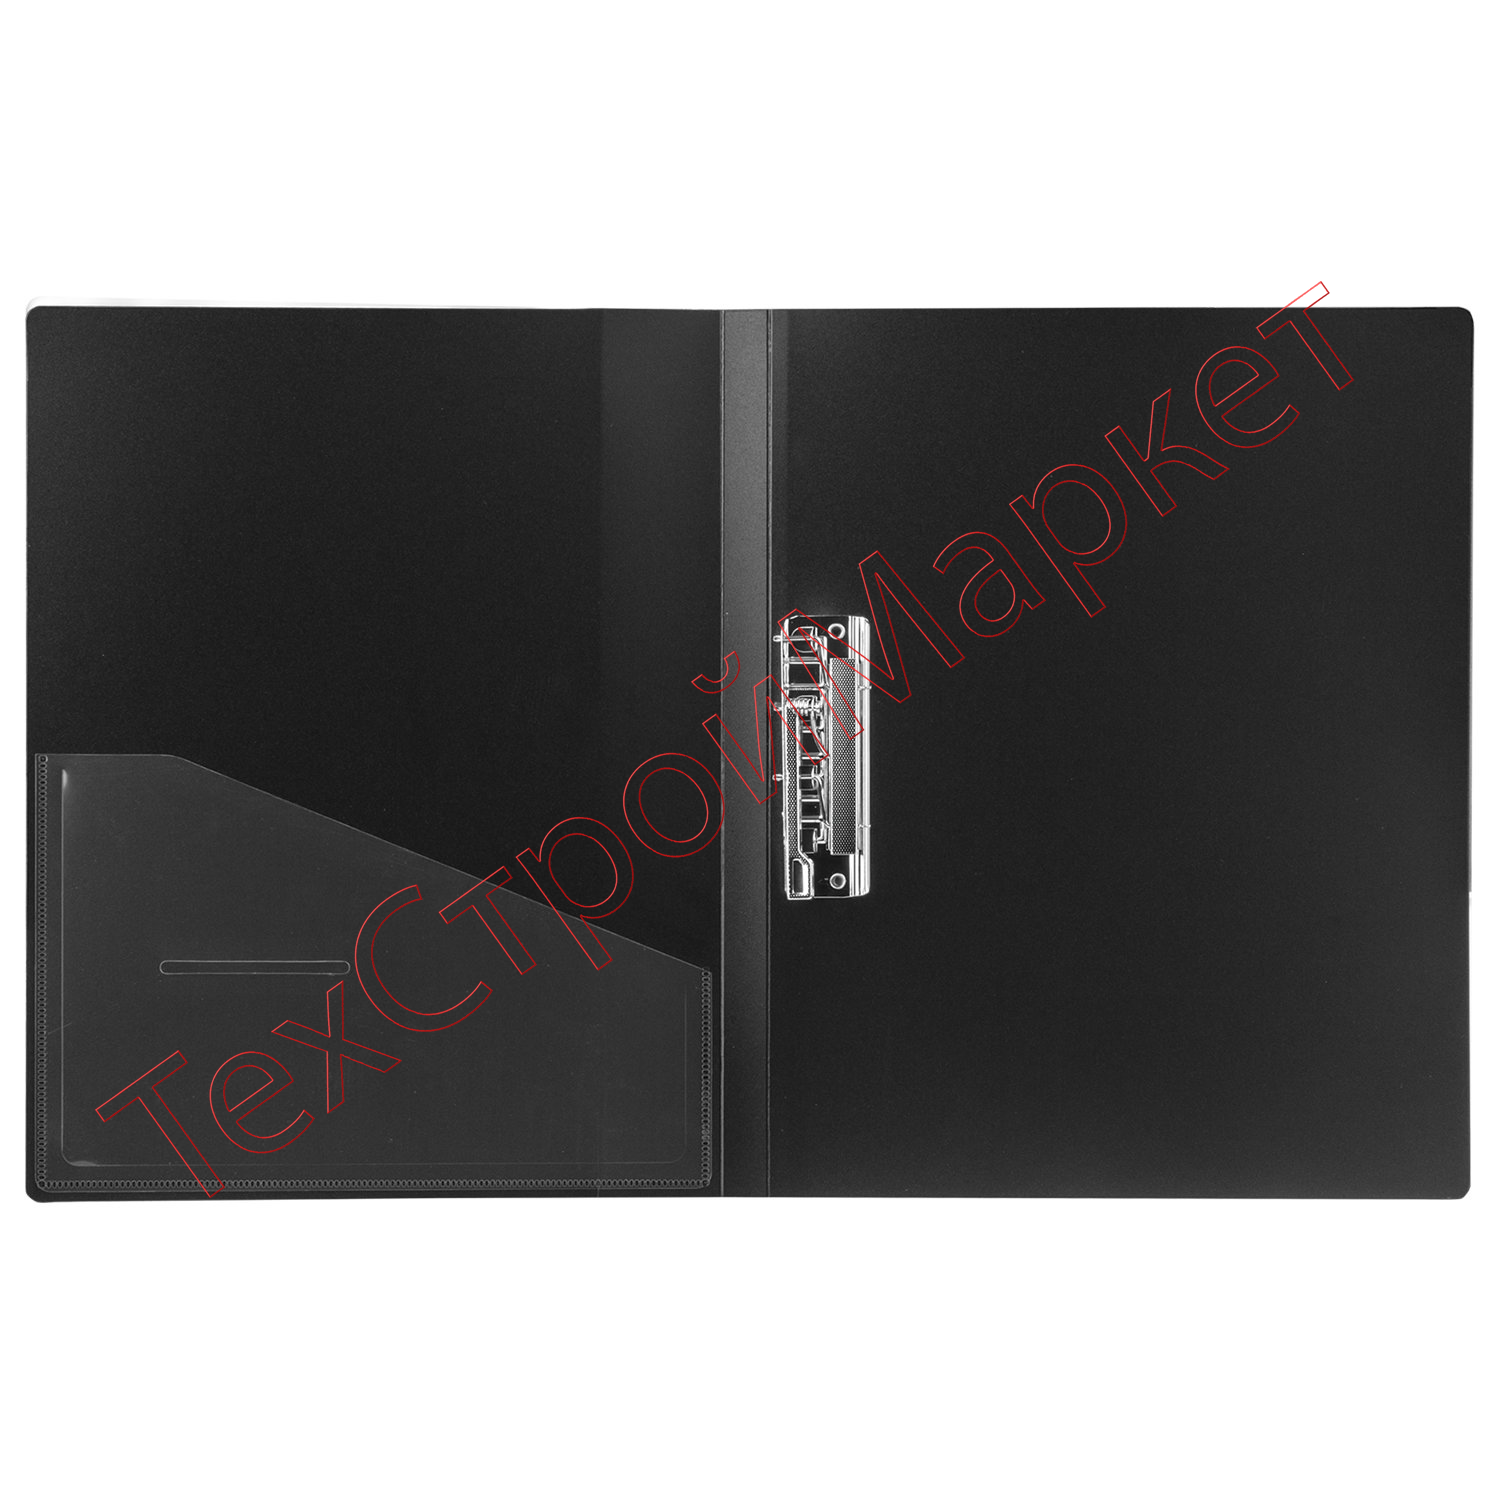 Папка с боковым металлическим прижимом и внутренним карманом BRAUBERG "Contract", черная, до 100 л., 0,7 мм, бизнес-класс, 221786